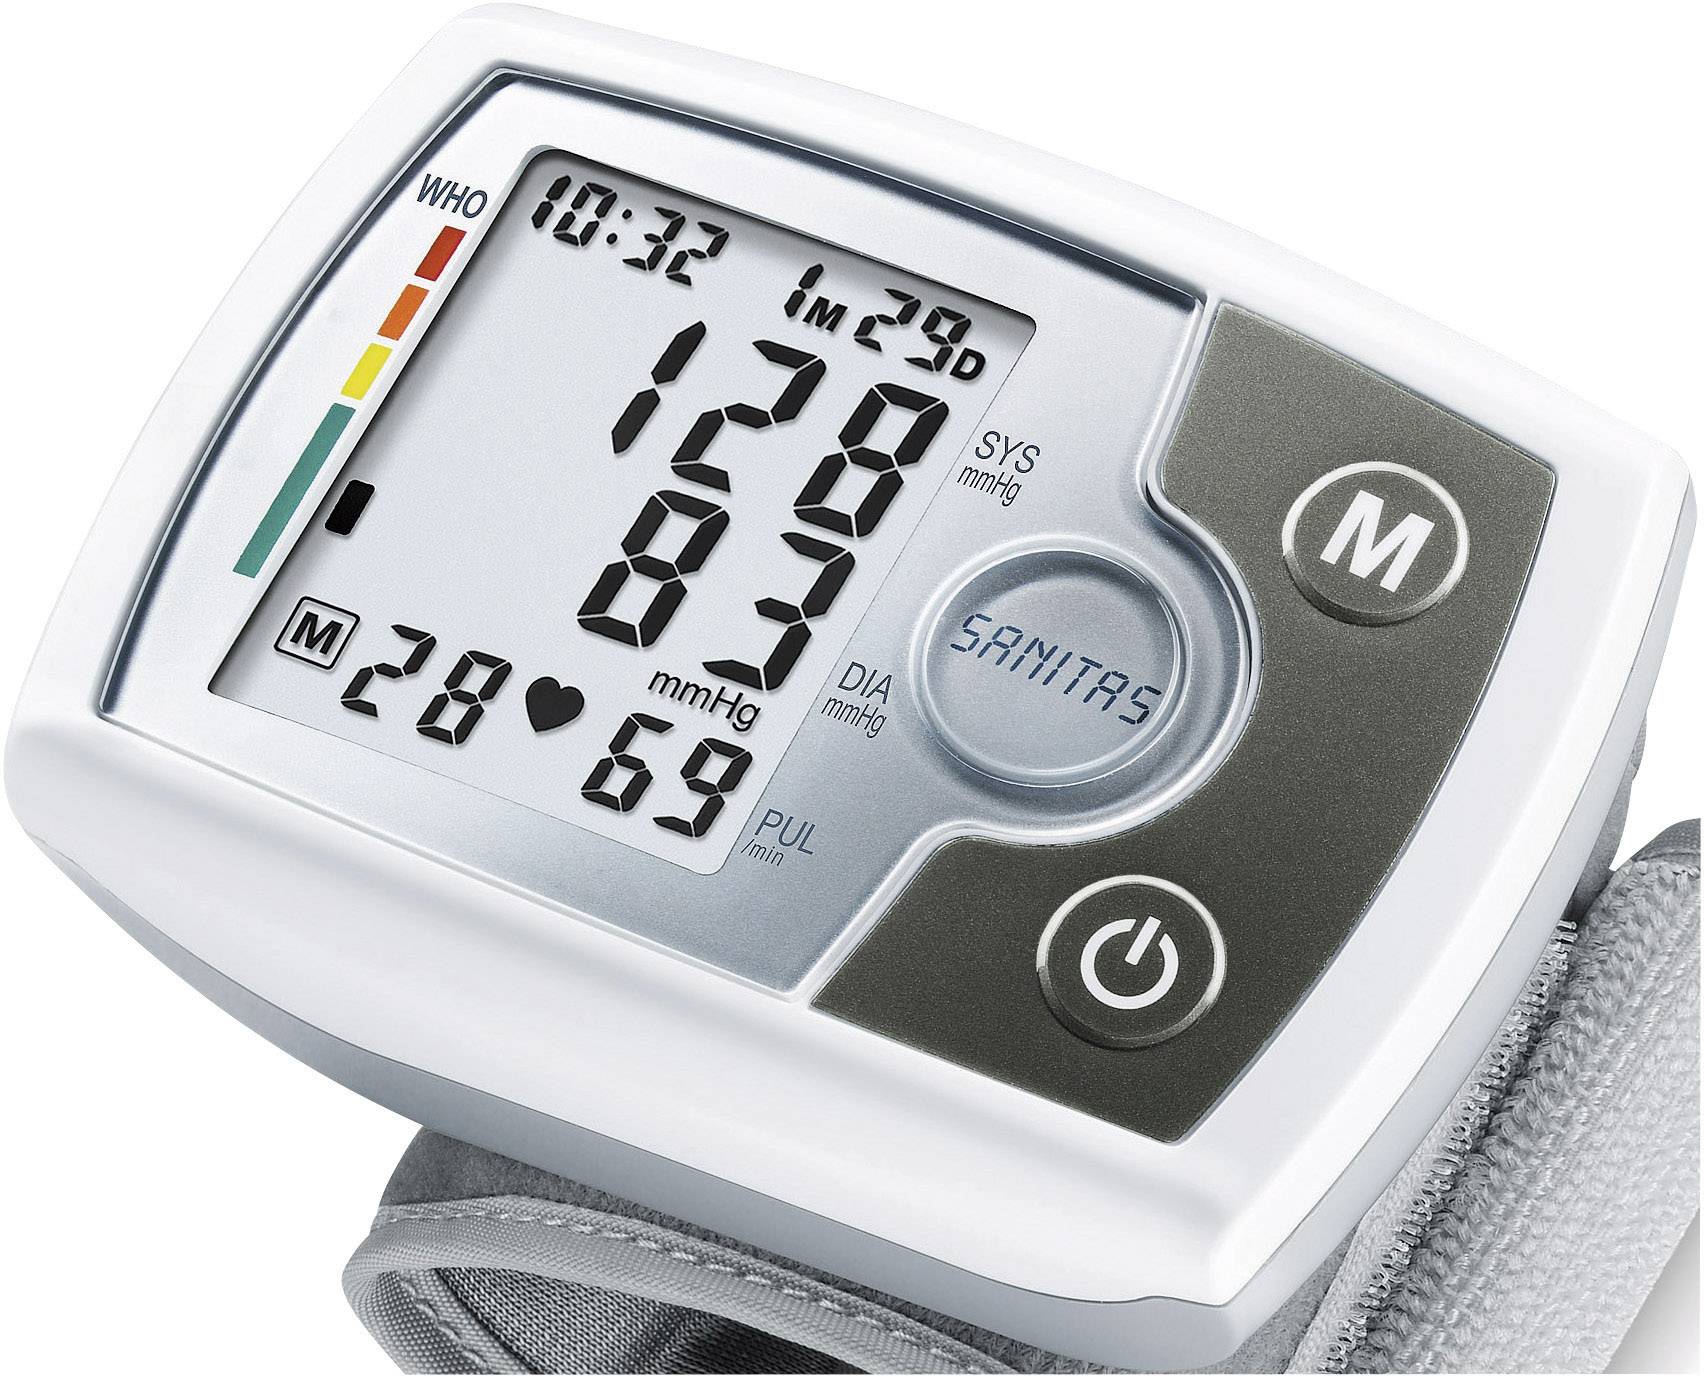 Sanitas SBM03 Wrist Blood pressure monitor 651.21 |